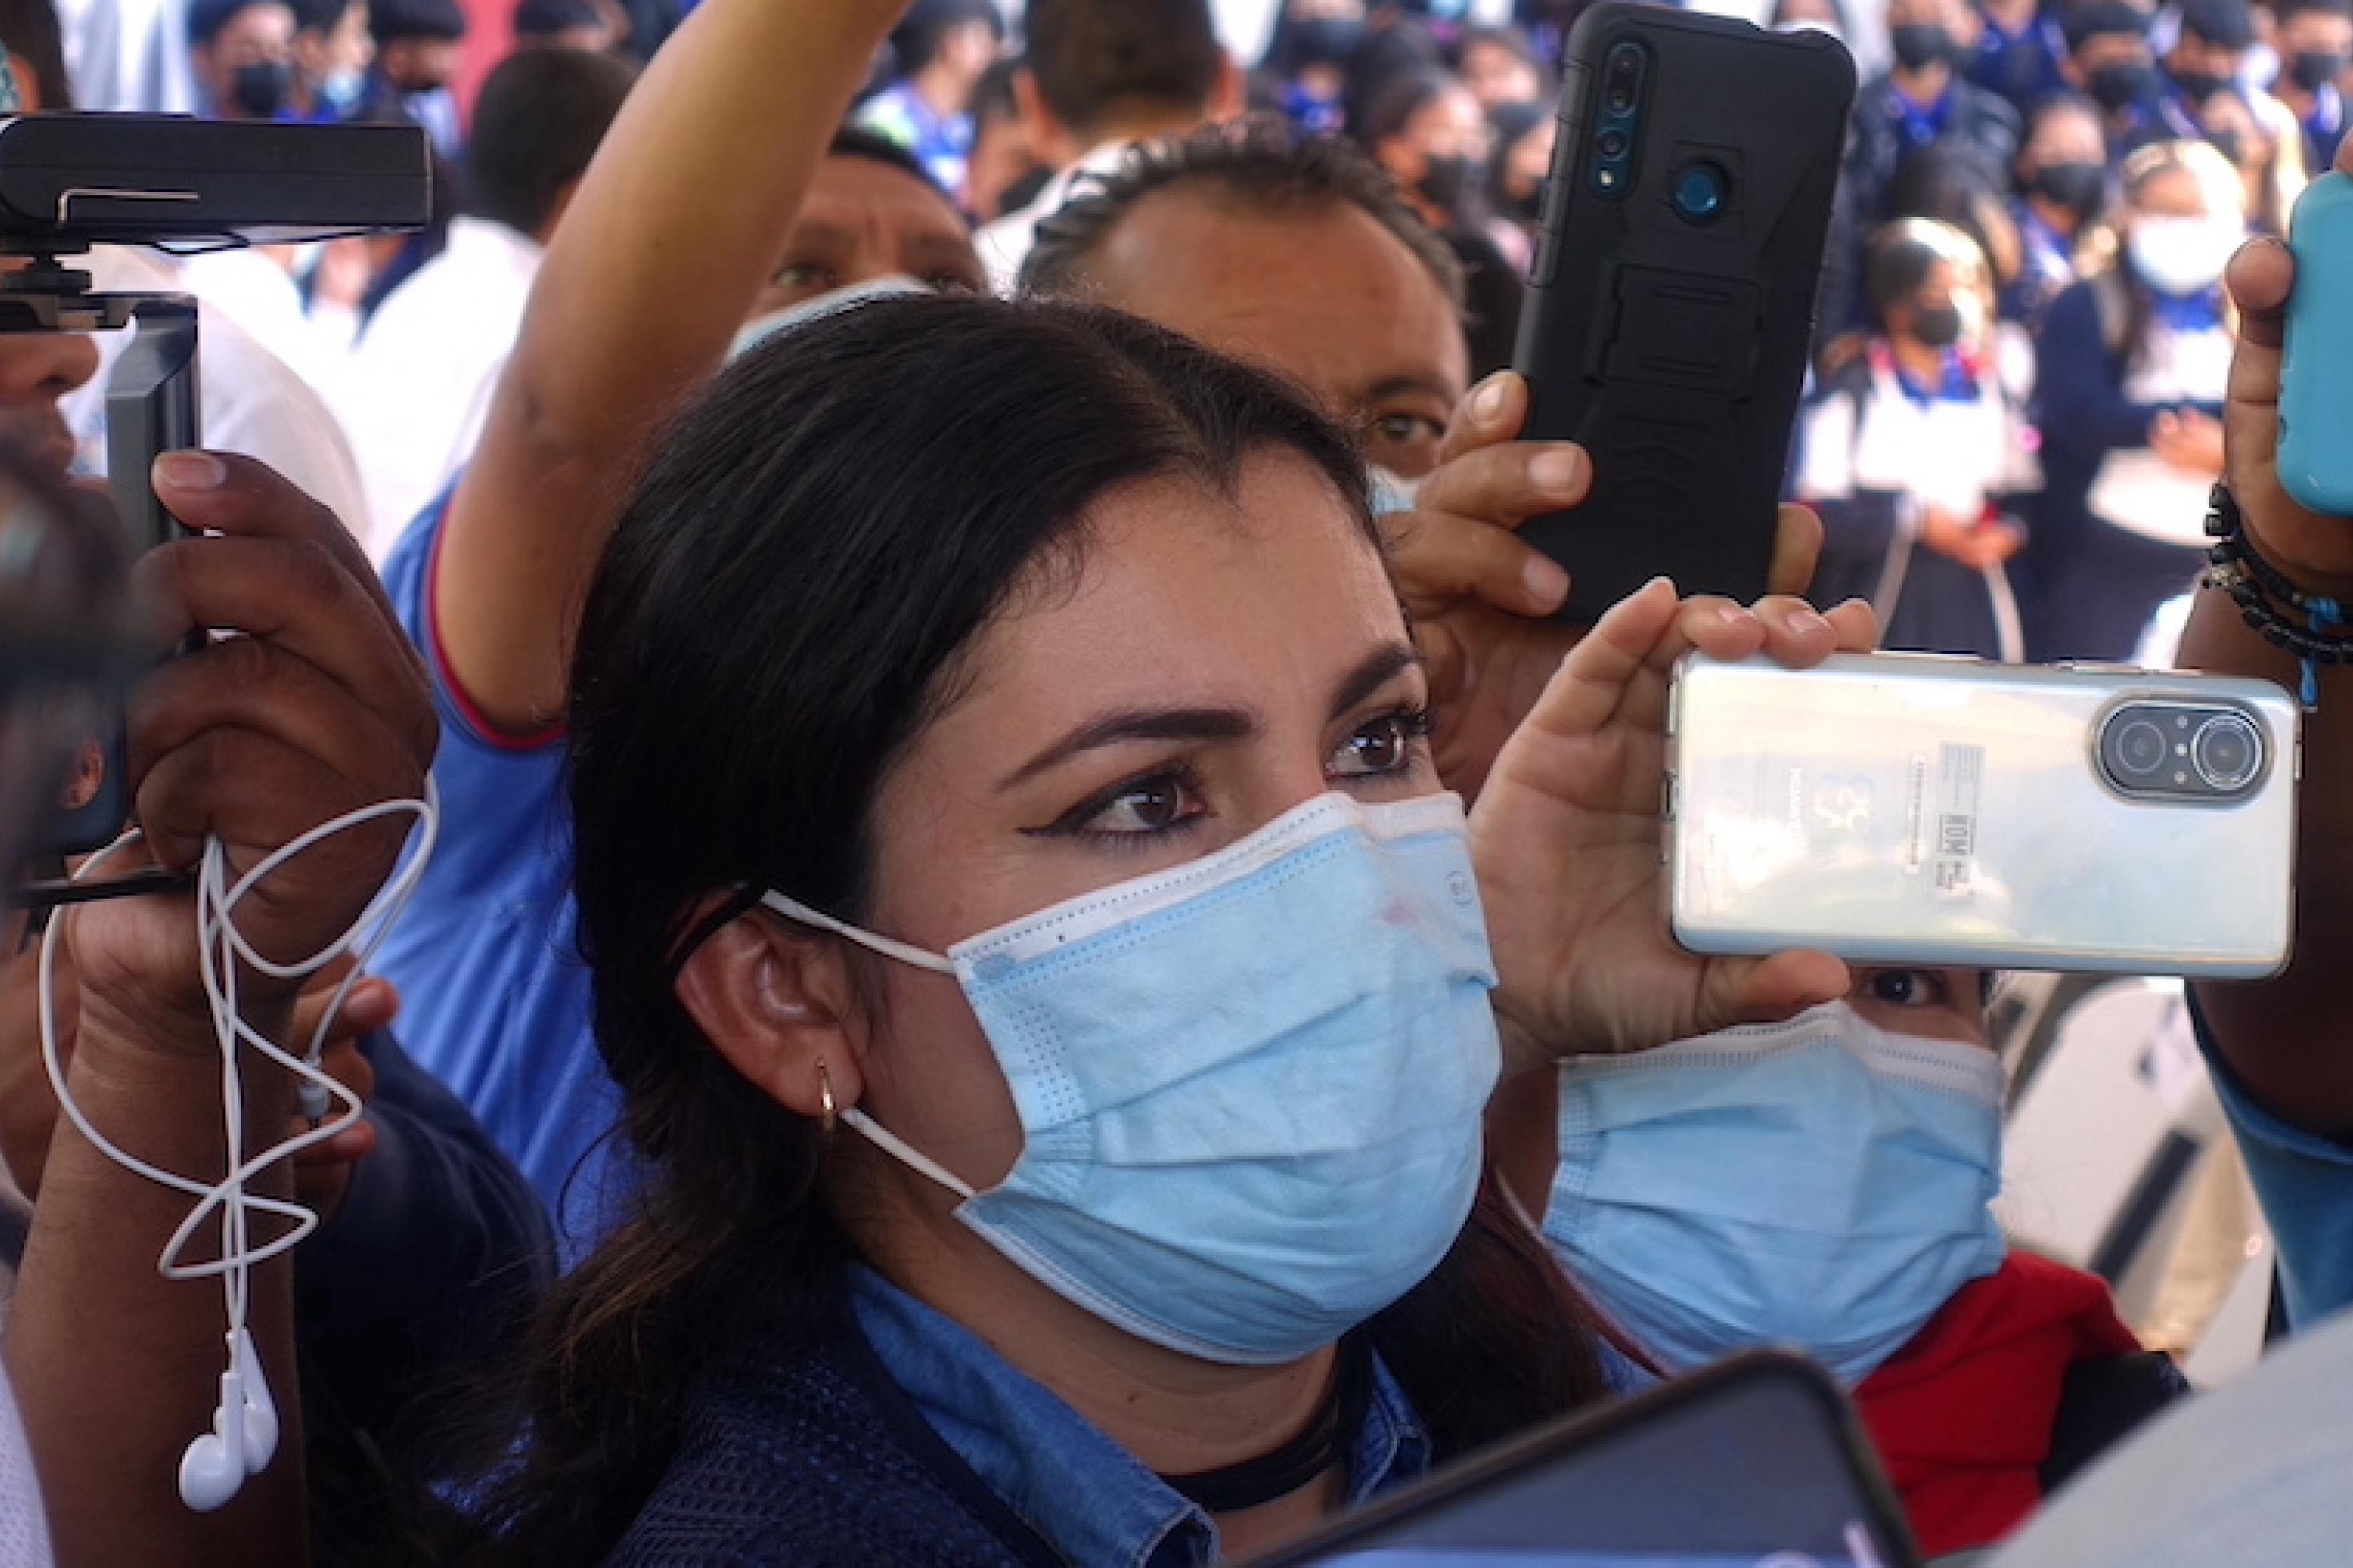 Die Journalistin steht in einer Menge, die Smartphones in die Luft hält, sie trägt eine Gesichtsmaske